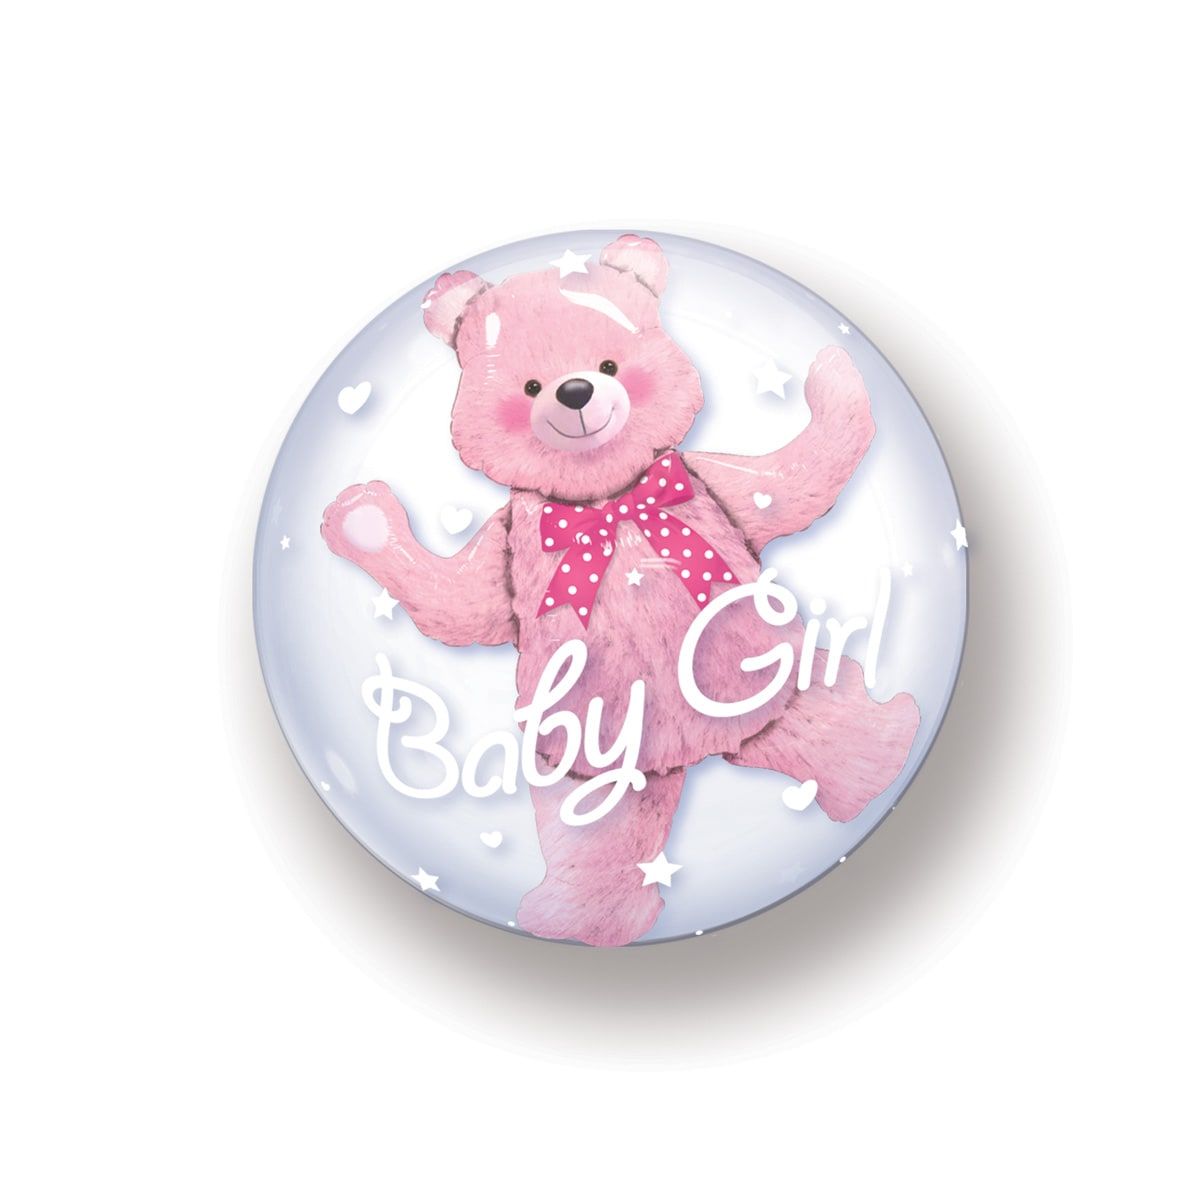 Baby Girl knuffelbeer bubbles ballon 61 cm